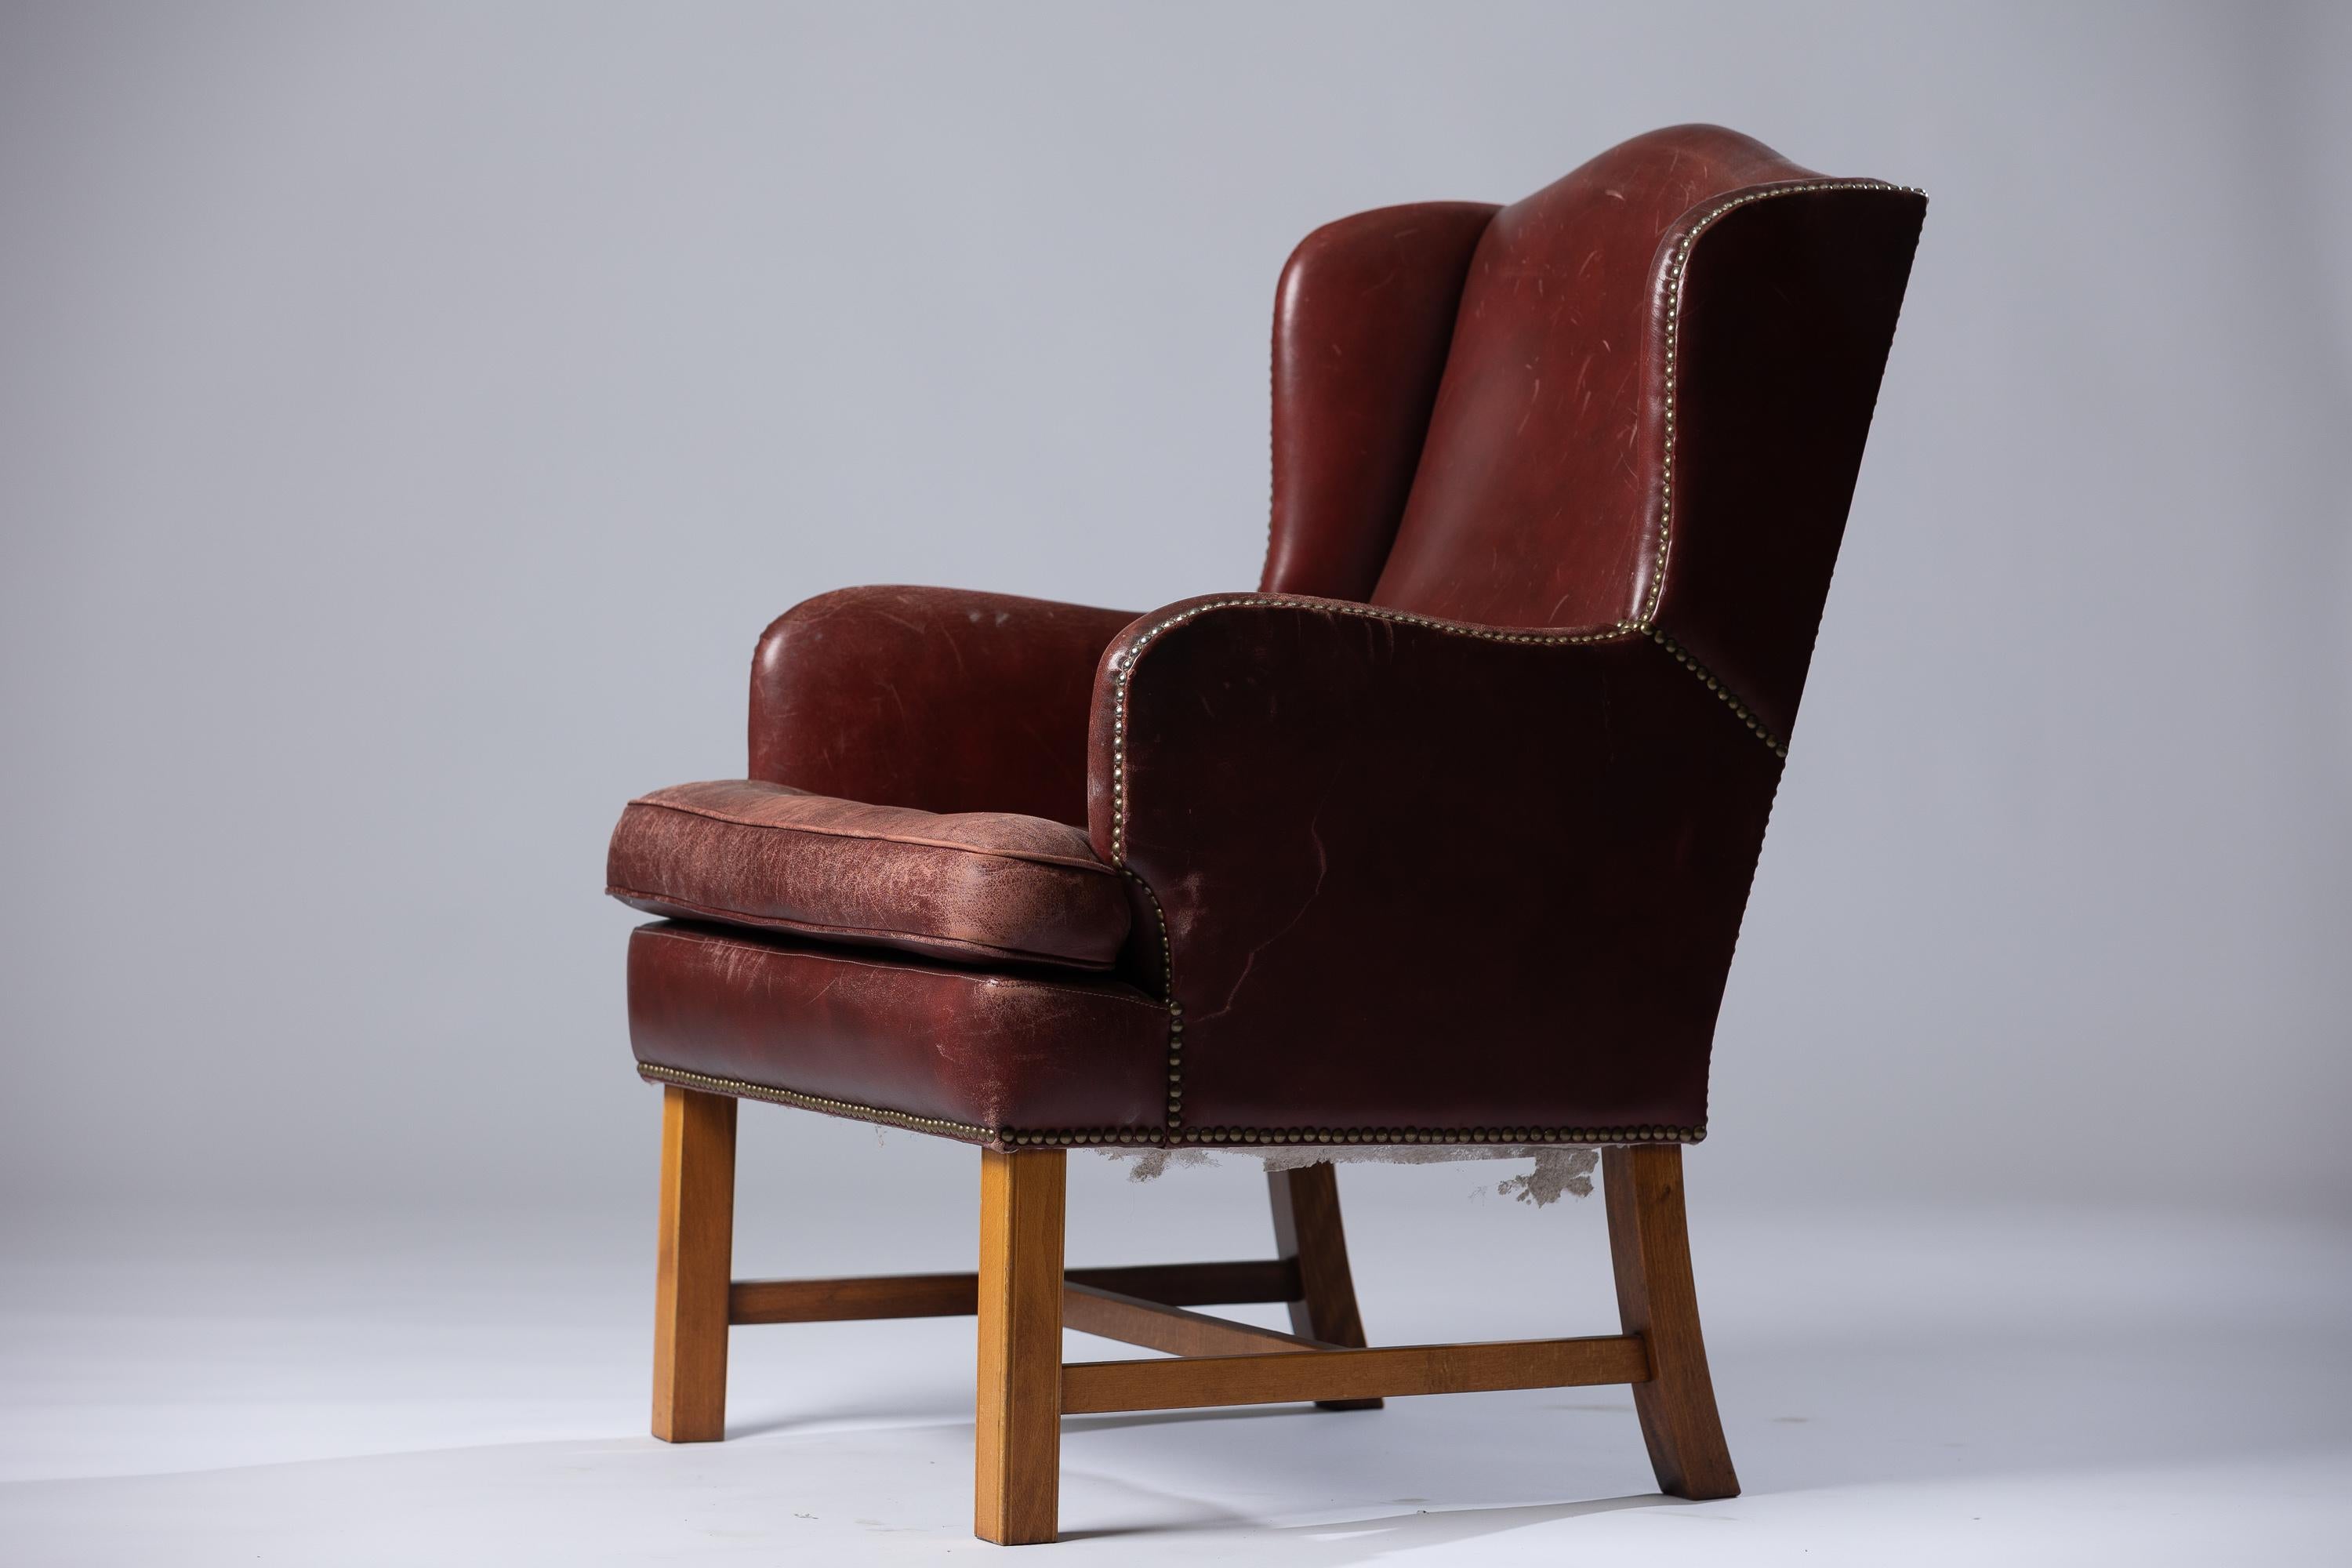 Élevez votre intérieur avec le fauteuil en cuir The Modern Scandinavian Modern fabriqué par le légendaire designer Arne Norells. Cette pièce emblématique incarne l'essence du design scandinave, caractérisé par ses lignes épurées, sa fonctionnalité